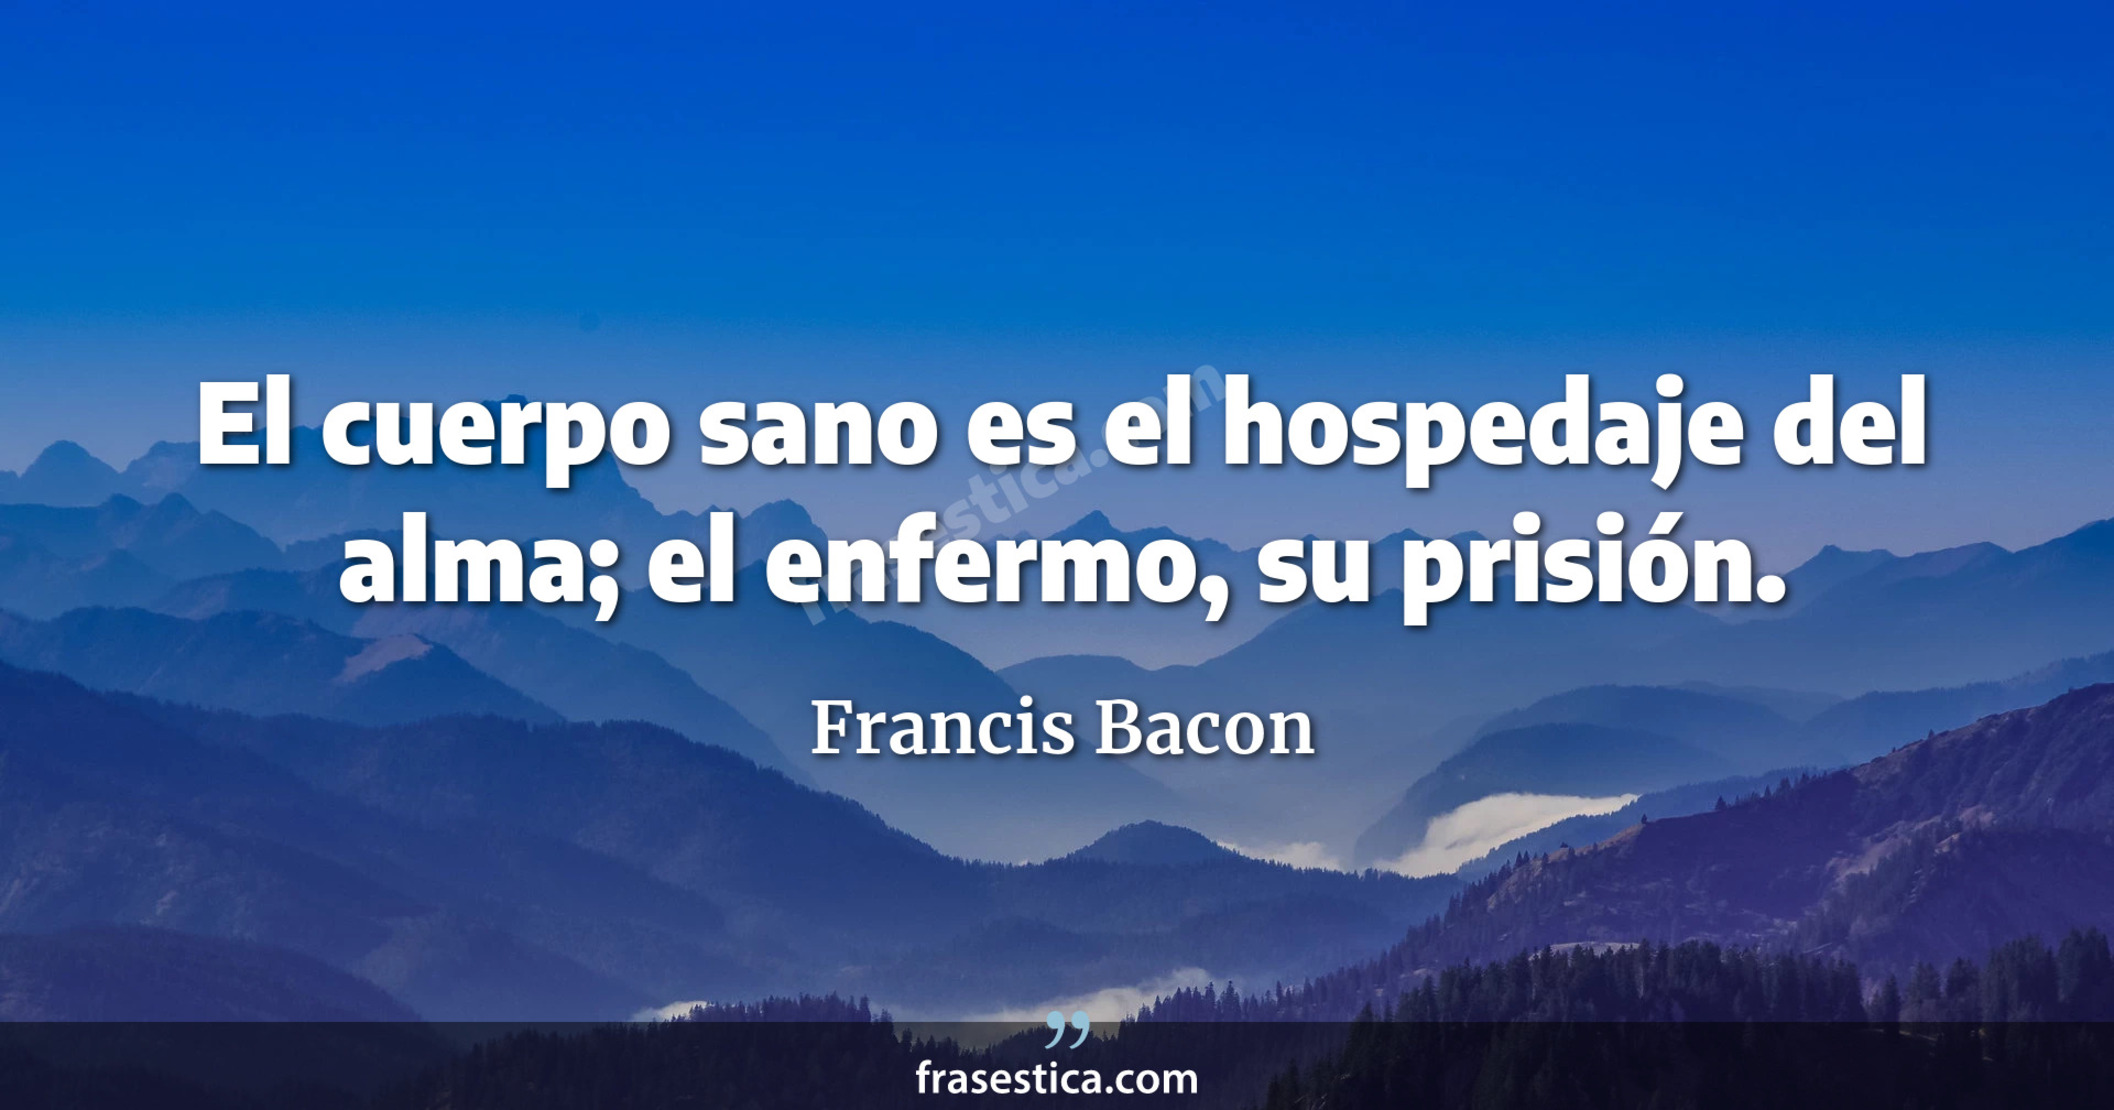 El cuerpo sano es el hospedaje del alma; el enfermo, su prisión. - Francis Bacon